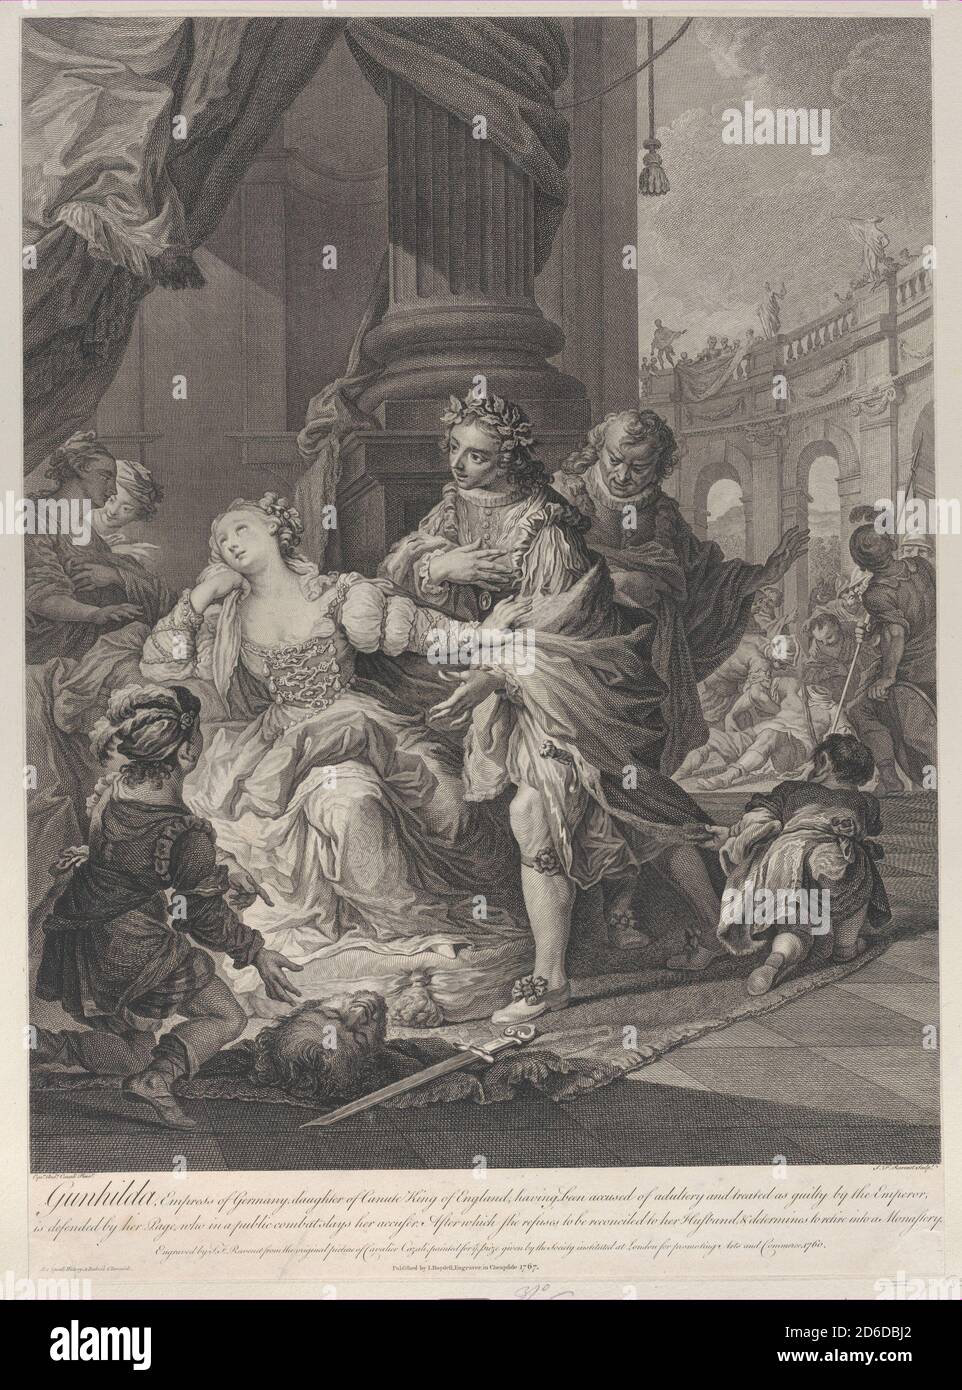 Gunhilda des Ehebruchs angeklagt, 1760. [Gunhilda, Kaiserin von Deutschland, Tochter von Canute König von England, nachdem der Ehebruch beschuldigt und als schuldig vom Kaiser behandelt, wird von ihrer Seite verteidigt, die in einem öffentlichen Kampf tötet ihren Ankläger. Danach weigert sie sich, mit ihrem Mann versöhnt zu werden, &amp; beschließt, in ein Kloster zurückzutreten]. Stockfoto